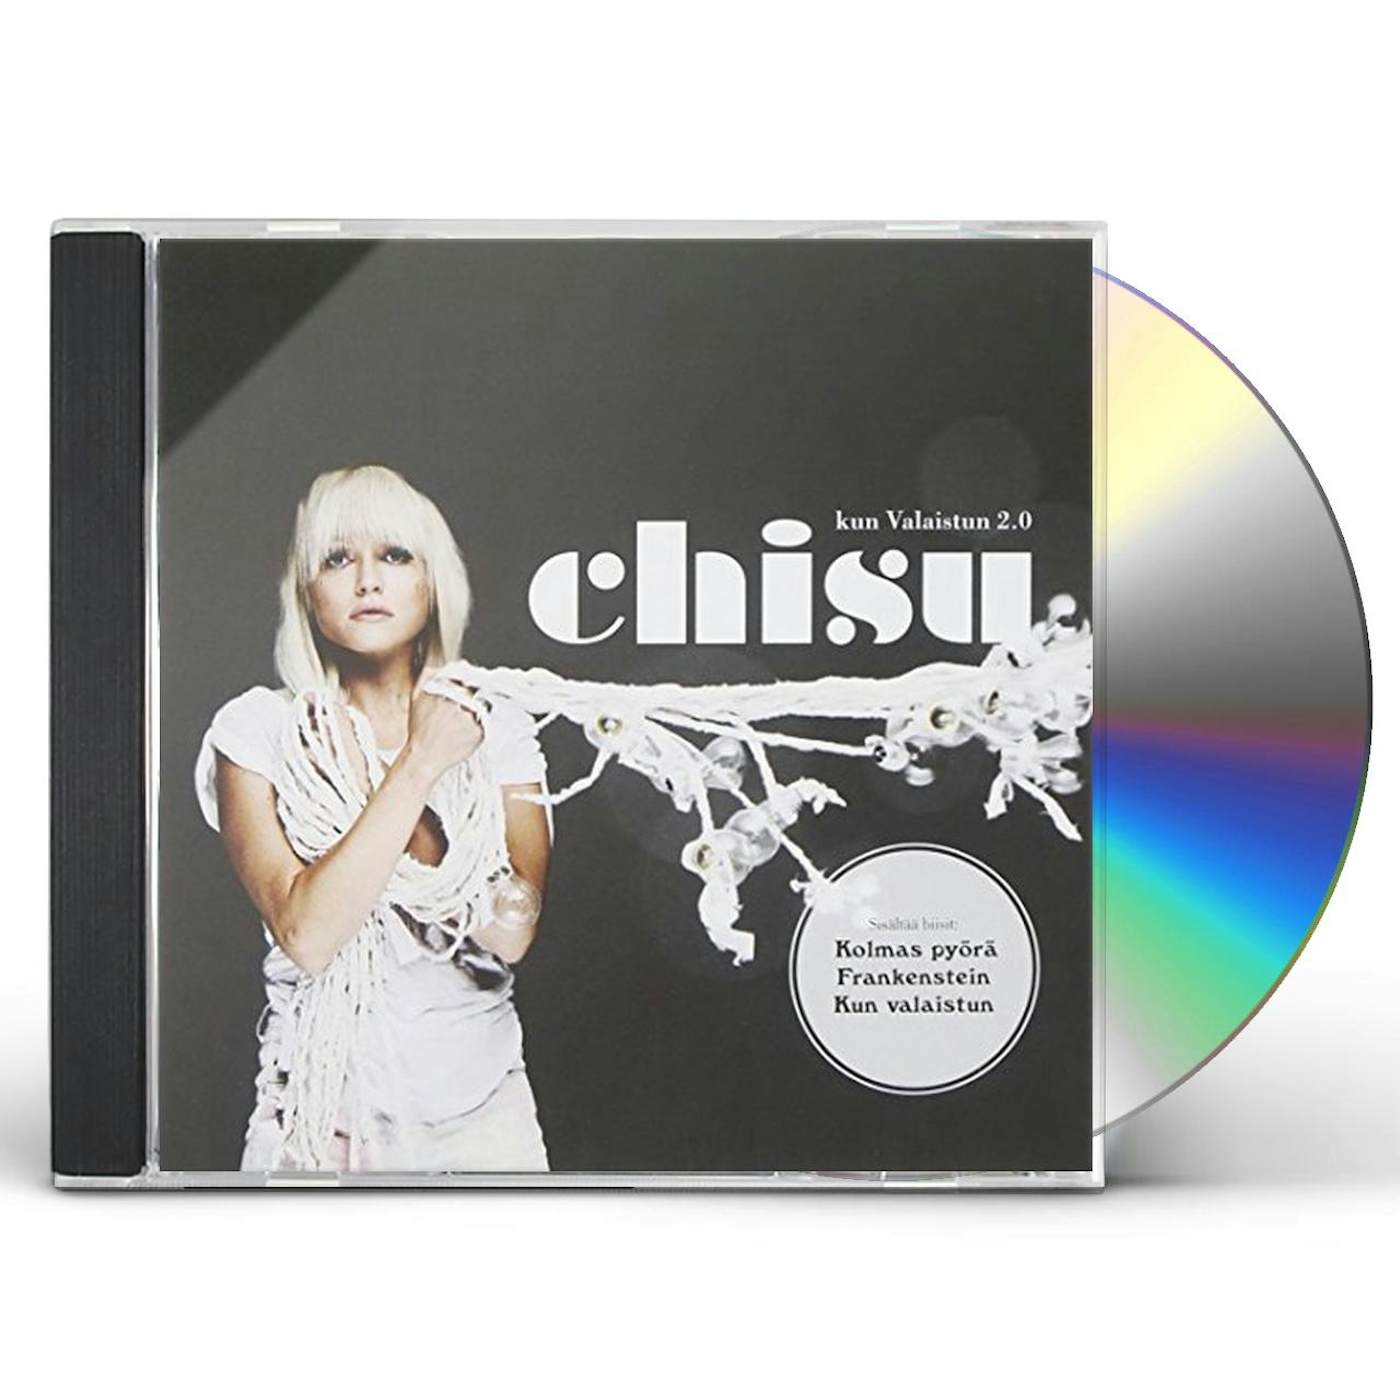 Chisu KUN VALAISTUN 2.0 CD